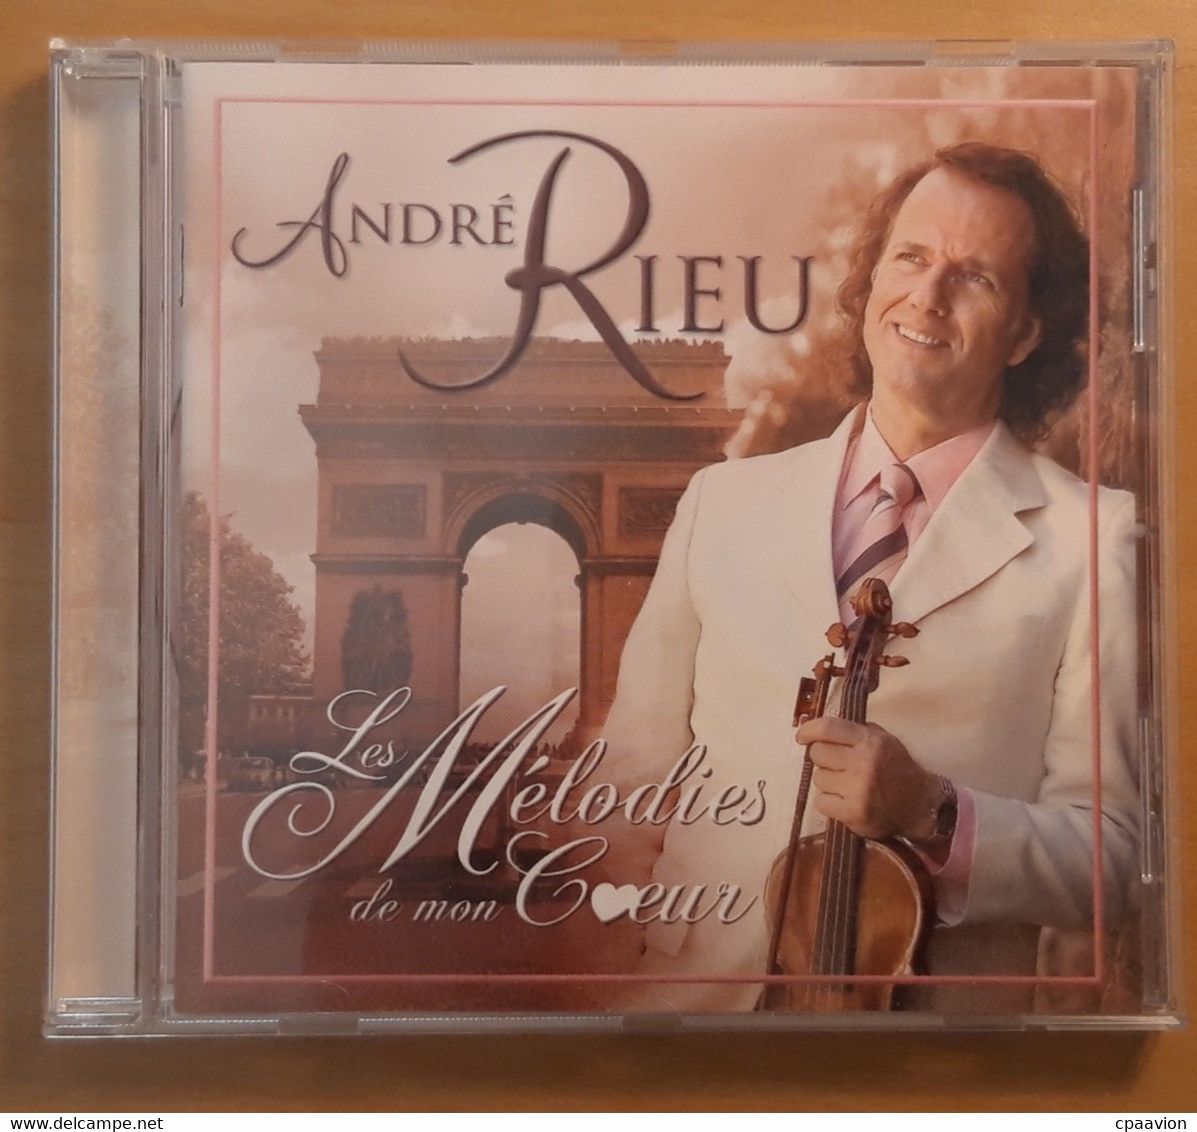 ANDRE RIEU; LES MELODIES DE MON COEUR - Instrumental